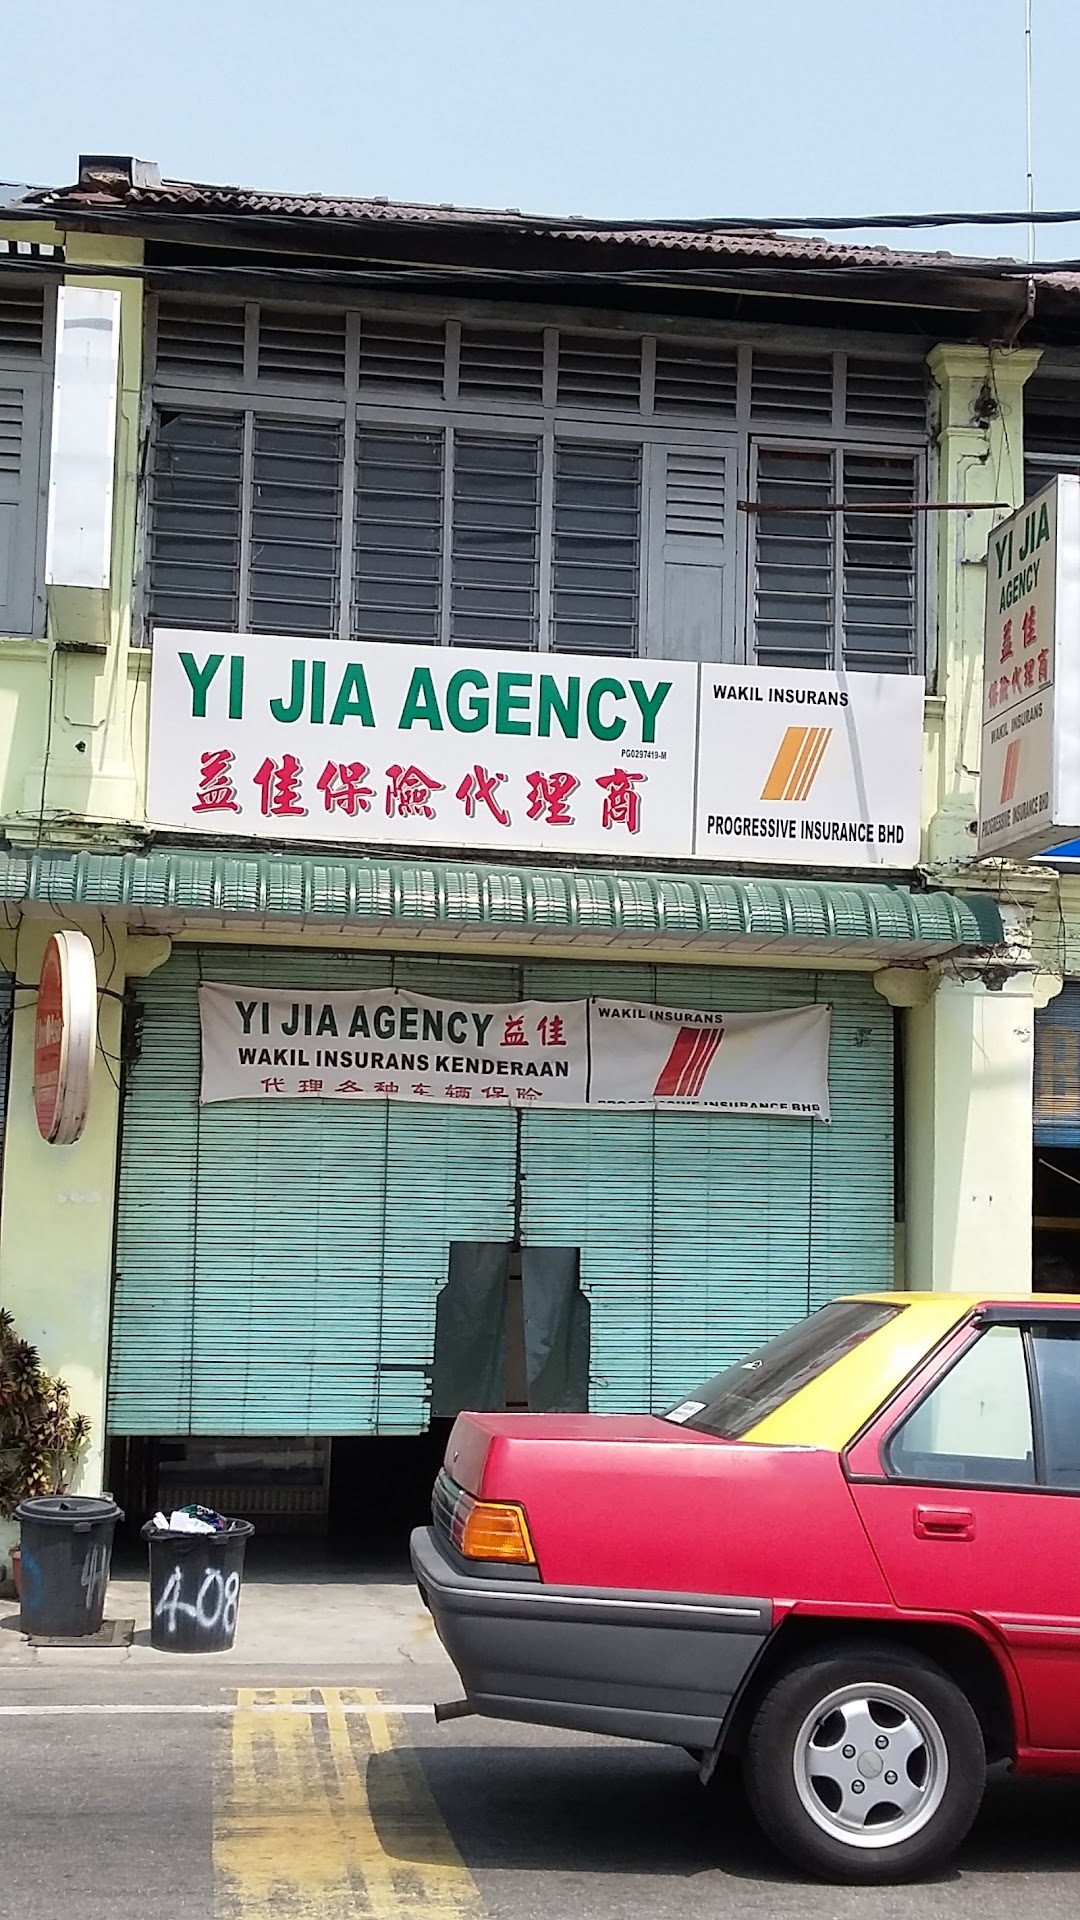 Yi Jia Agency